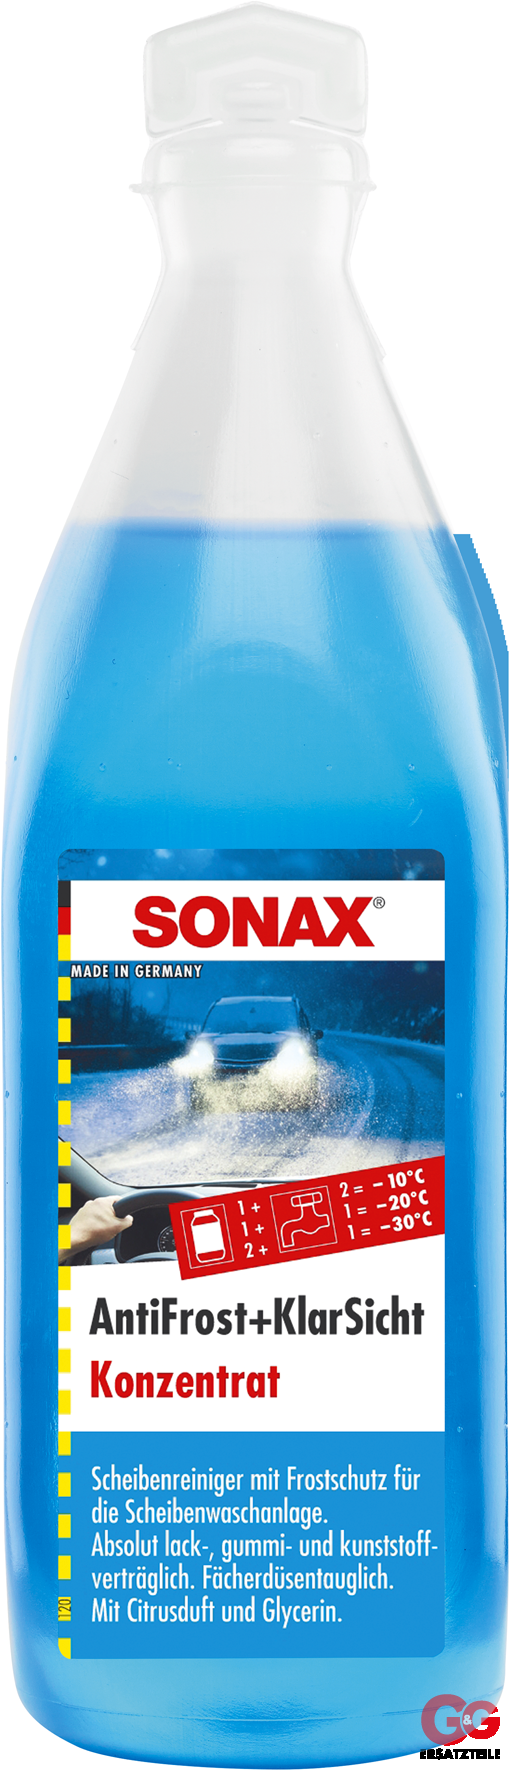 SONAX AntiFrost & KlarSicht Konzentrat Citrus 0,25 l Art.Nr. 03321000, Scheibenreinigung, Fahrzeugpflege, Elektrik, Desinfektion, Produkte